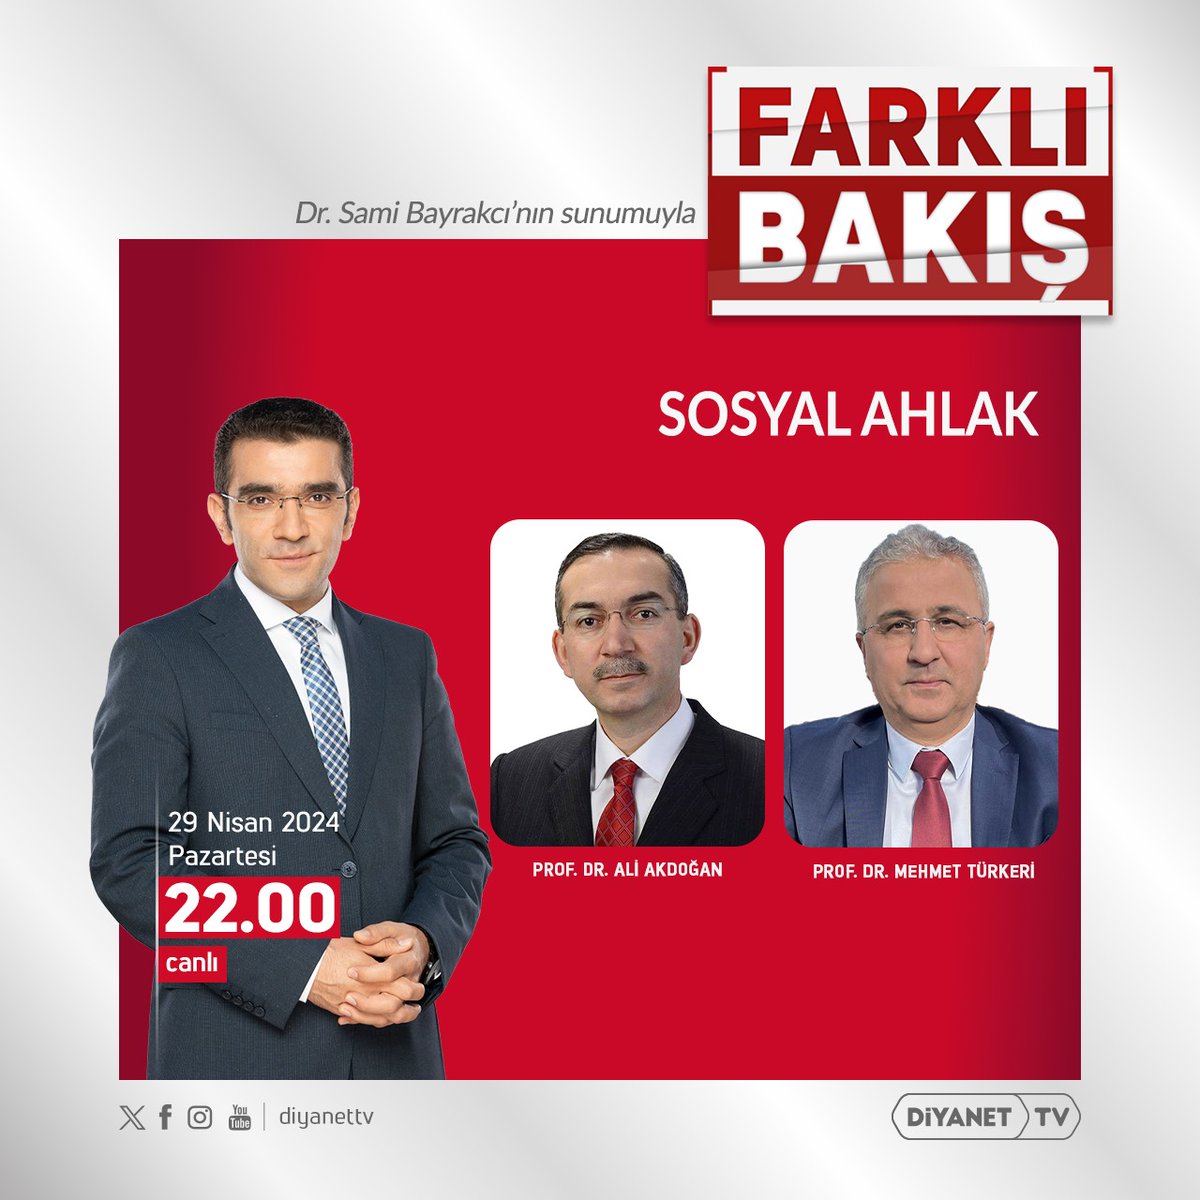 Birazdan... #DiyanetTV #FarklıBakış Prof. Dr. Ali Akdoğan Prof. Dr. Mehmet Türkeri hocalarımızla... 'Sosyal ahlak'ı konuşacağız.